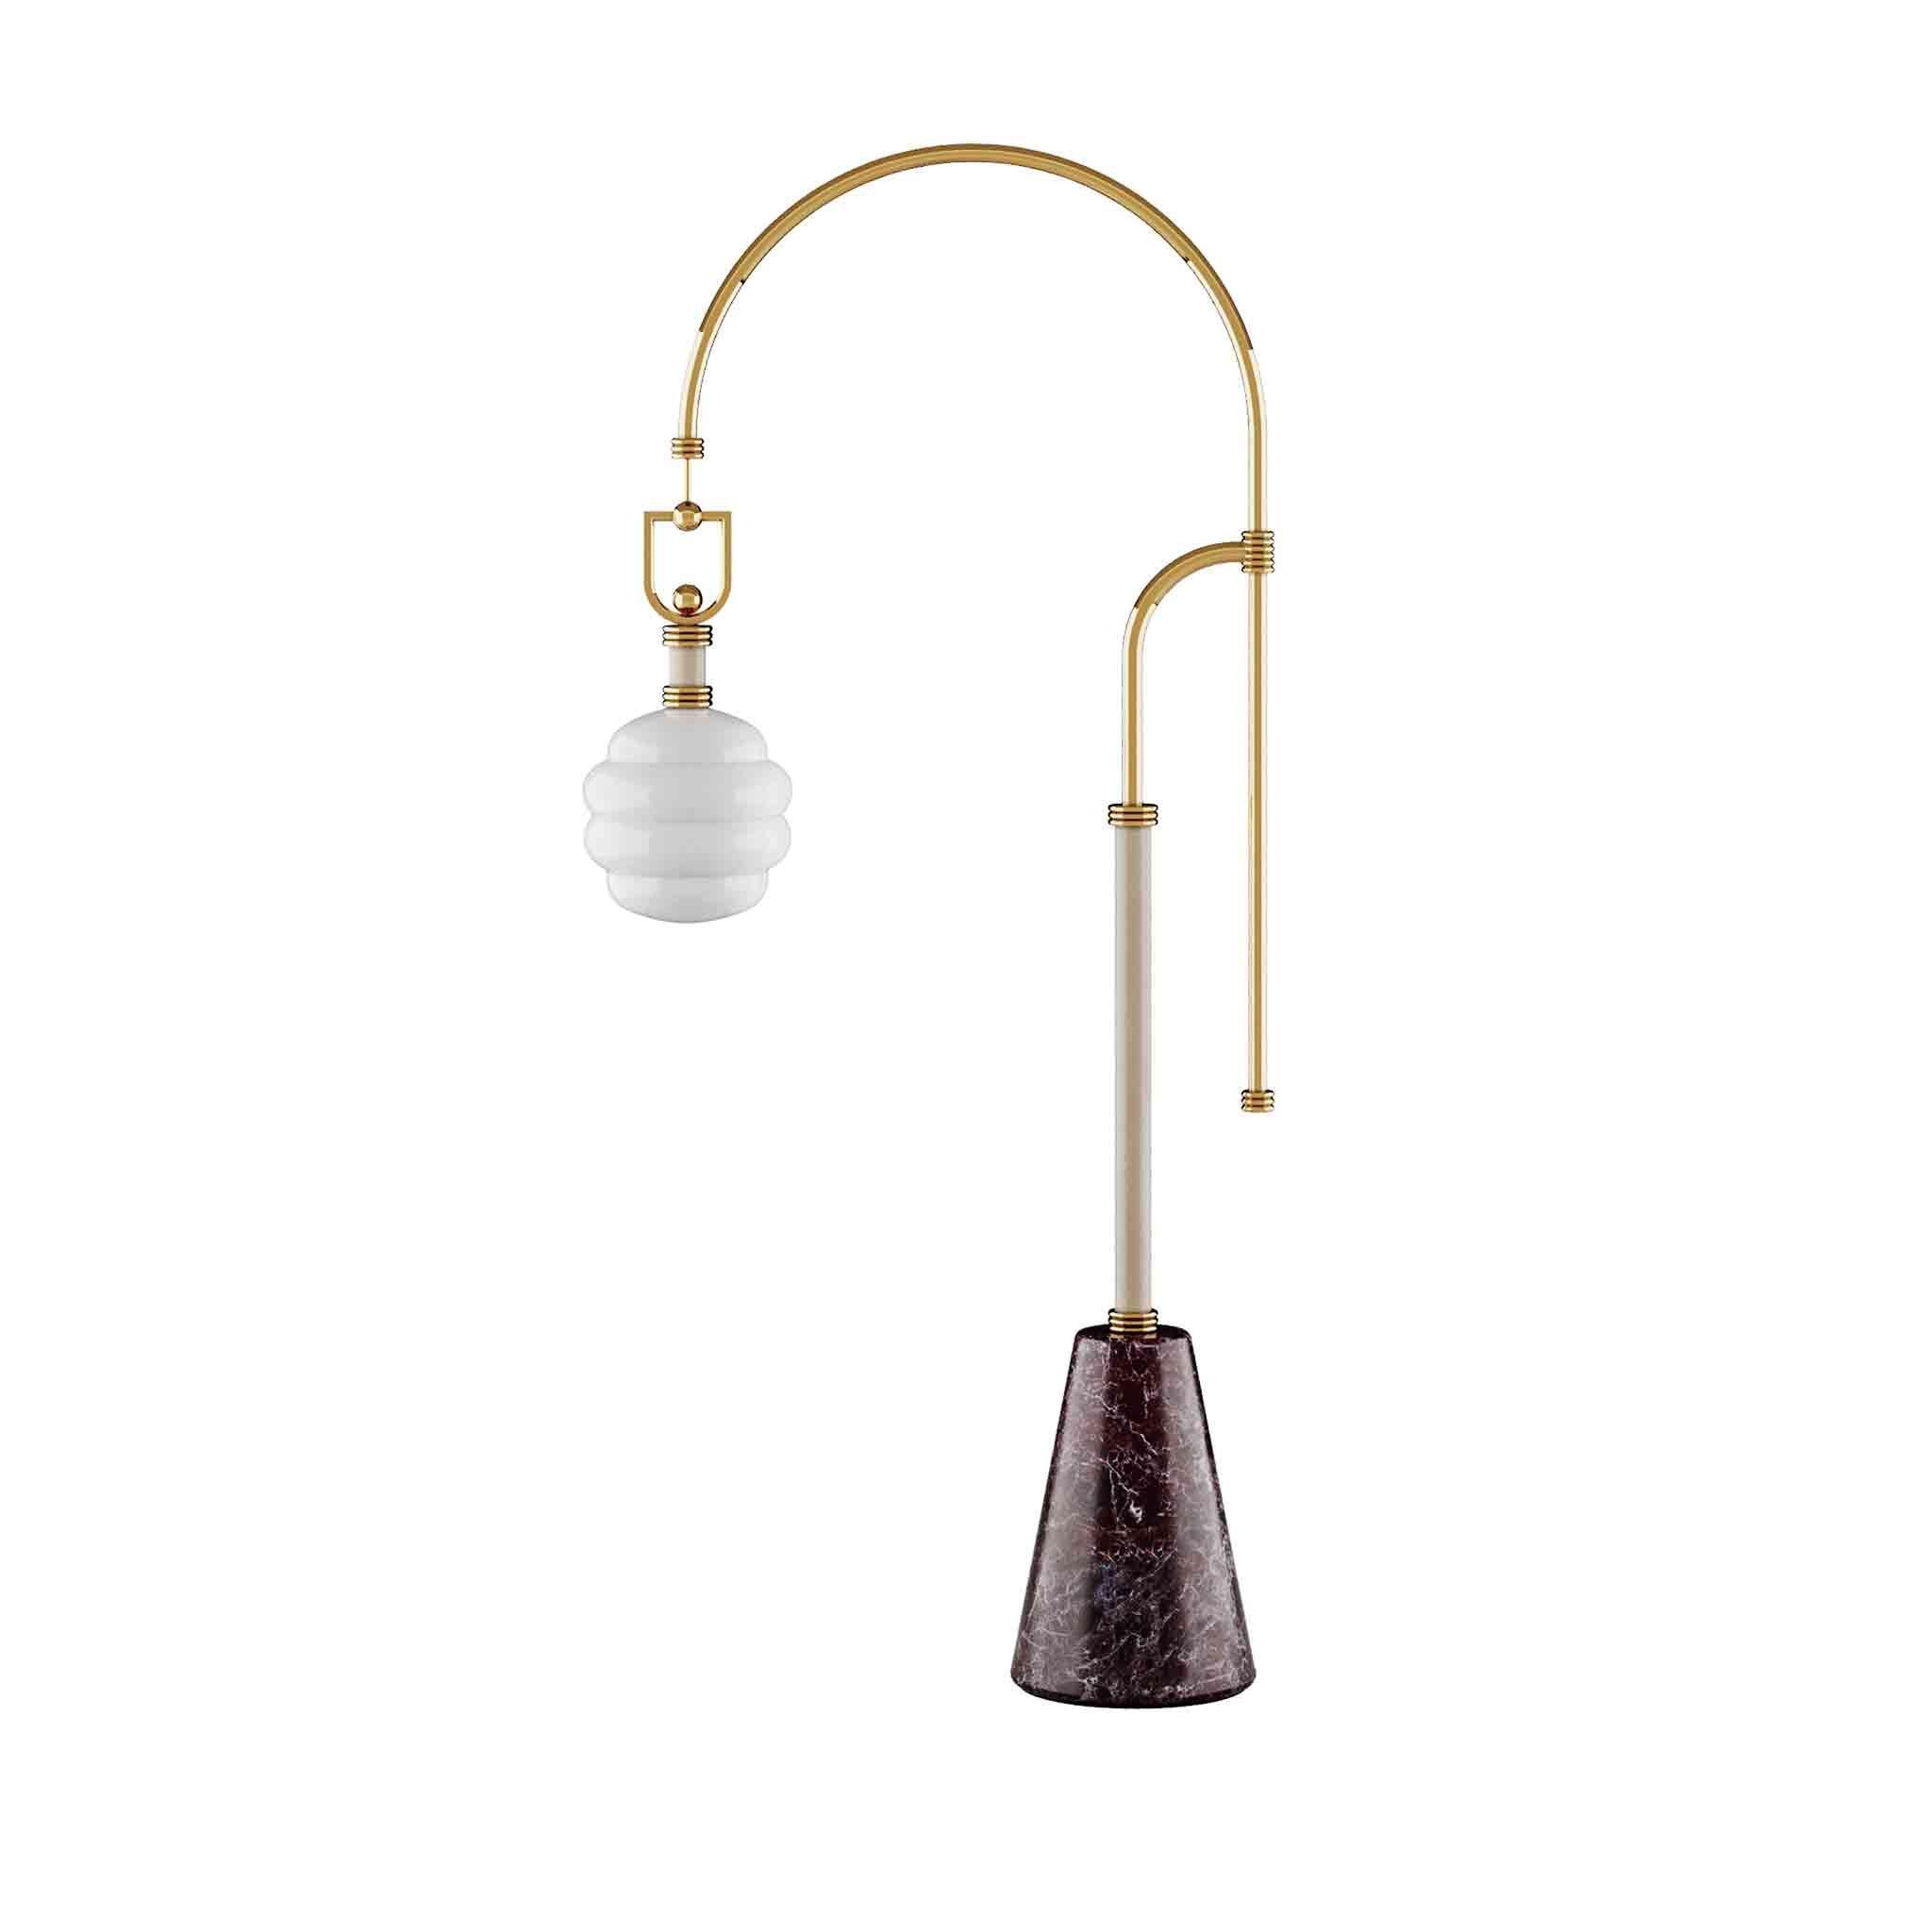 Le lampadaire Luminous est une réinterprétation classique transformée en un lampadaire moderne unique. Le design de cette pièce renoue avec les formes intemporelles des années 70. Un lampadaire design aux formes audacieuses et élégantes pour votre